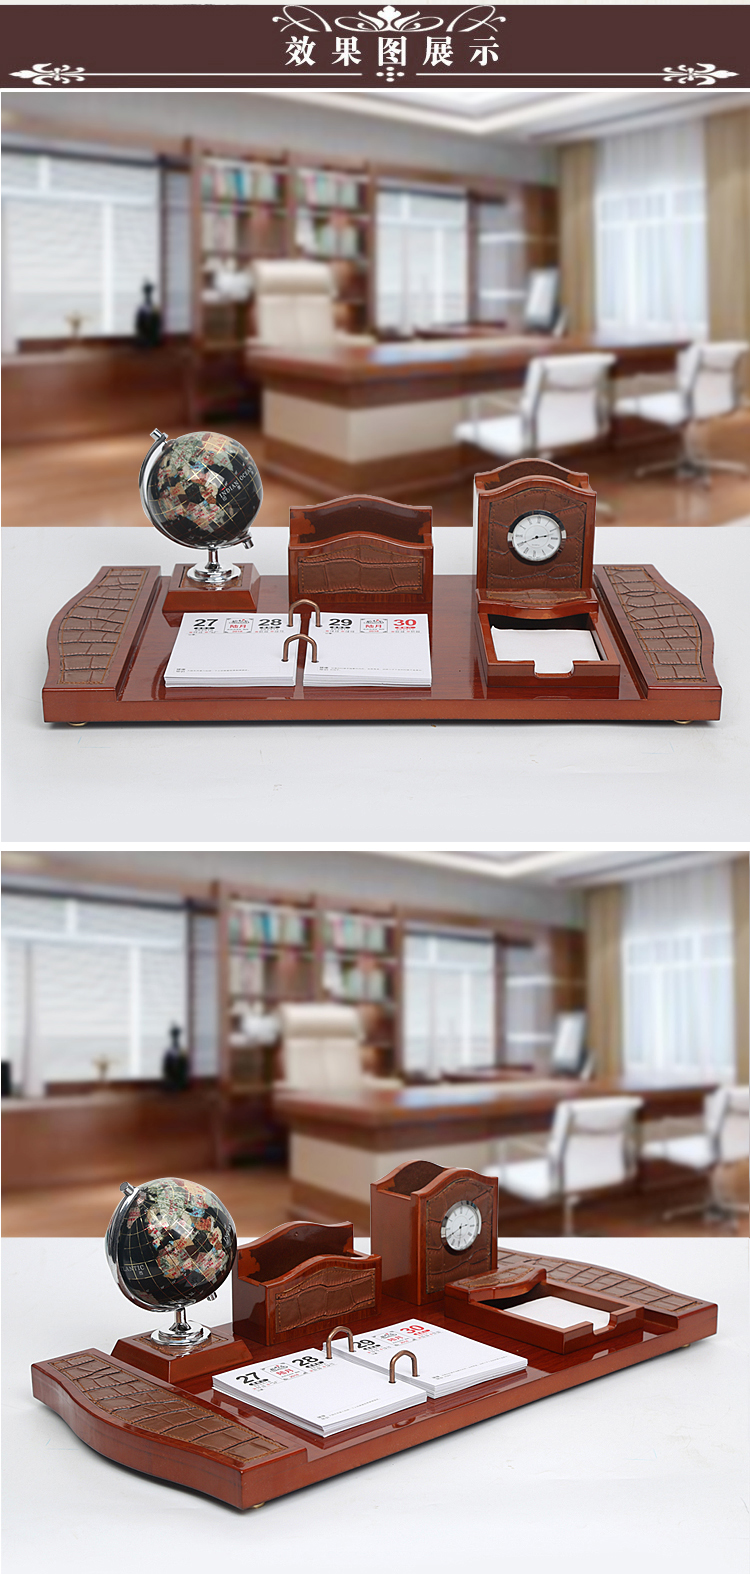 老板办公桌装饰品摆件办公室桌面创意文台笔筒送领导礼品生活日用创意